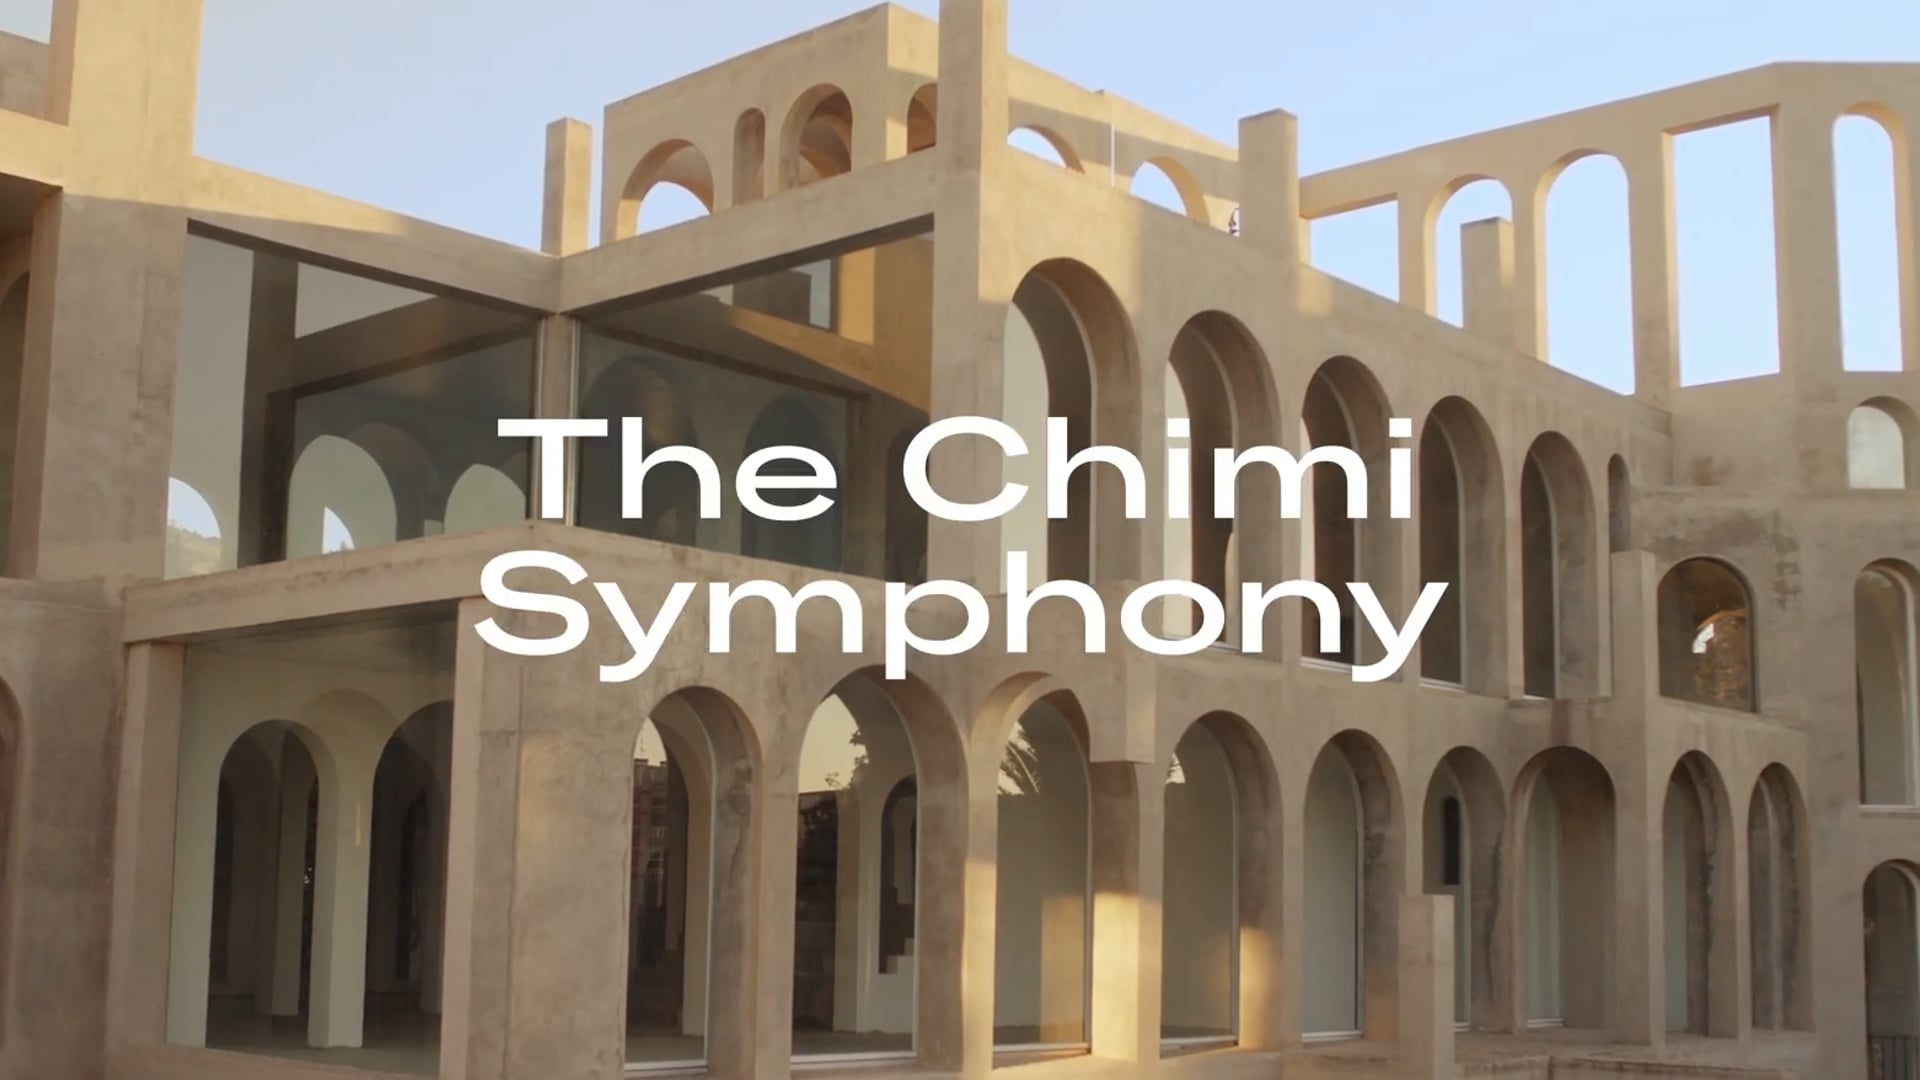 The Chimi Symphony